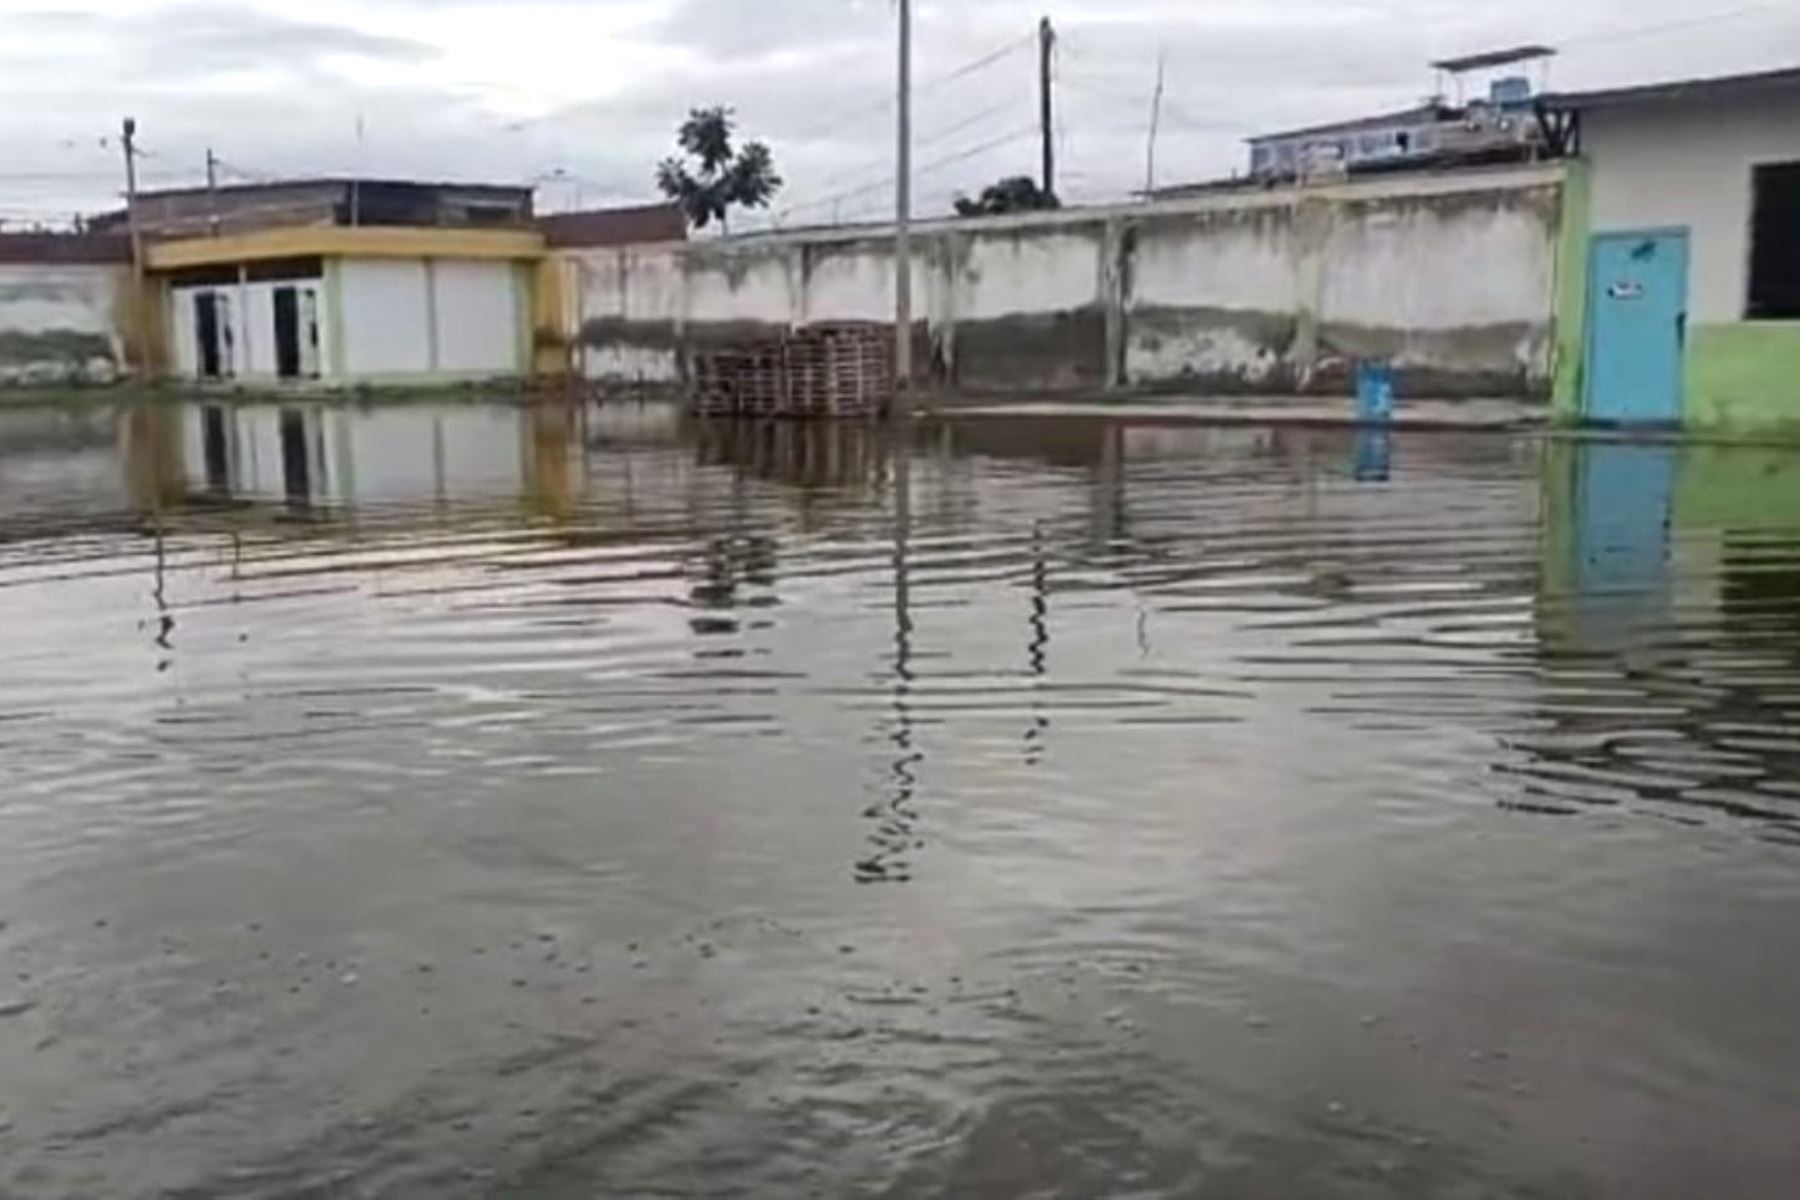 Anoche, la Comisión Multisectorial Enfen informó que se mantiene el estado de “Alerta de El Niño costero”. Foto: ANDINA/difusión.